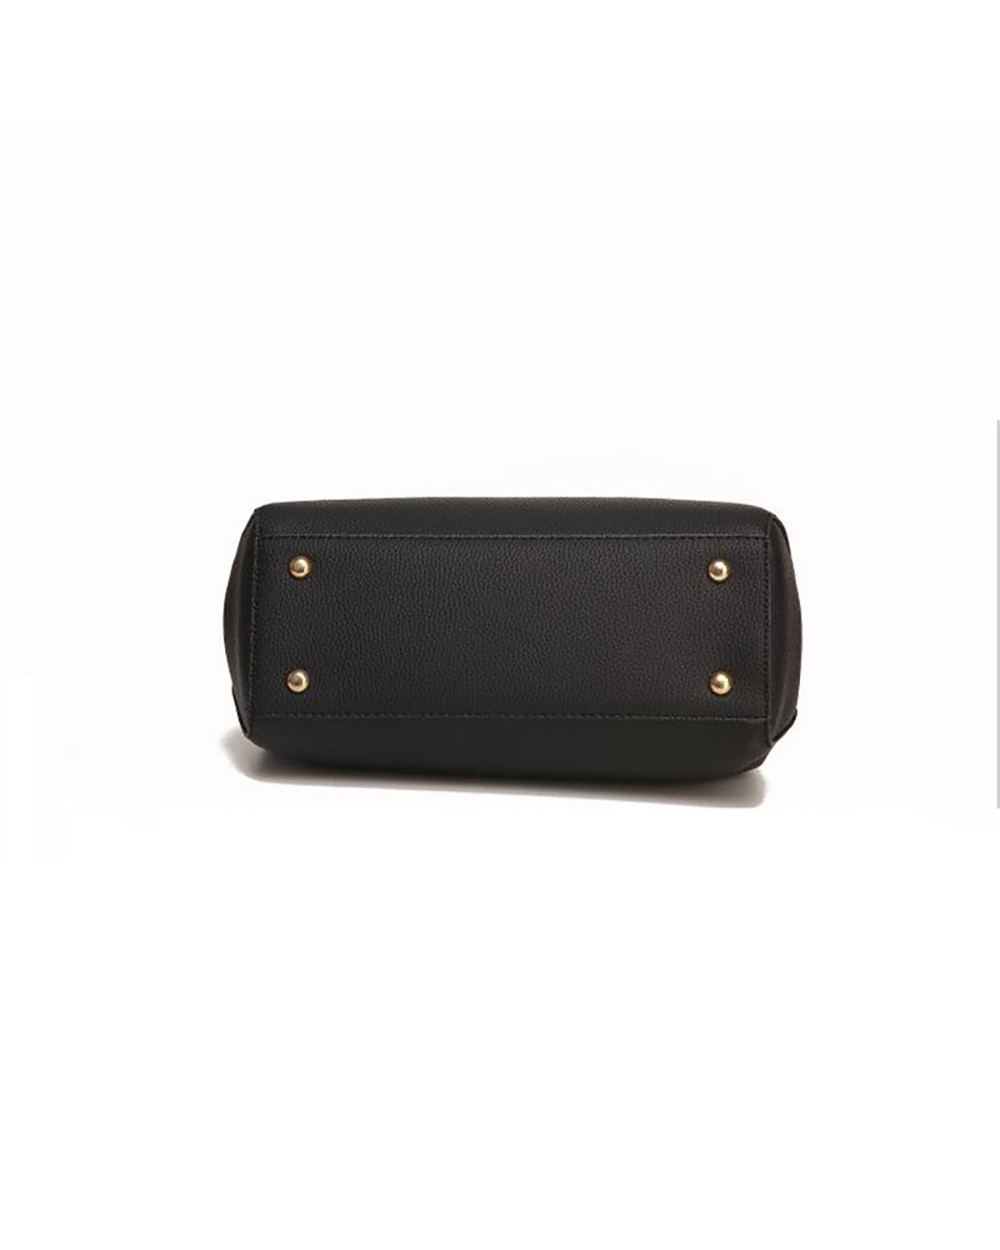 elegant tassel ladies handbag black - 6